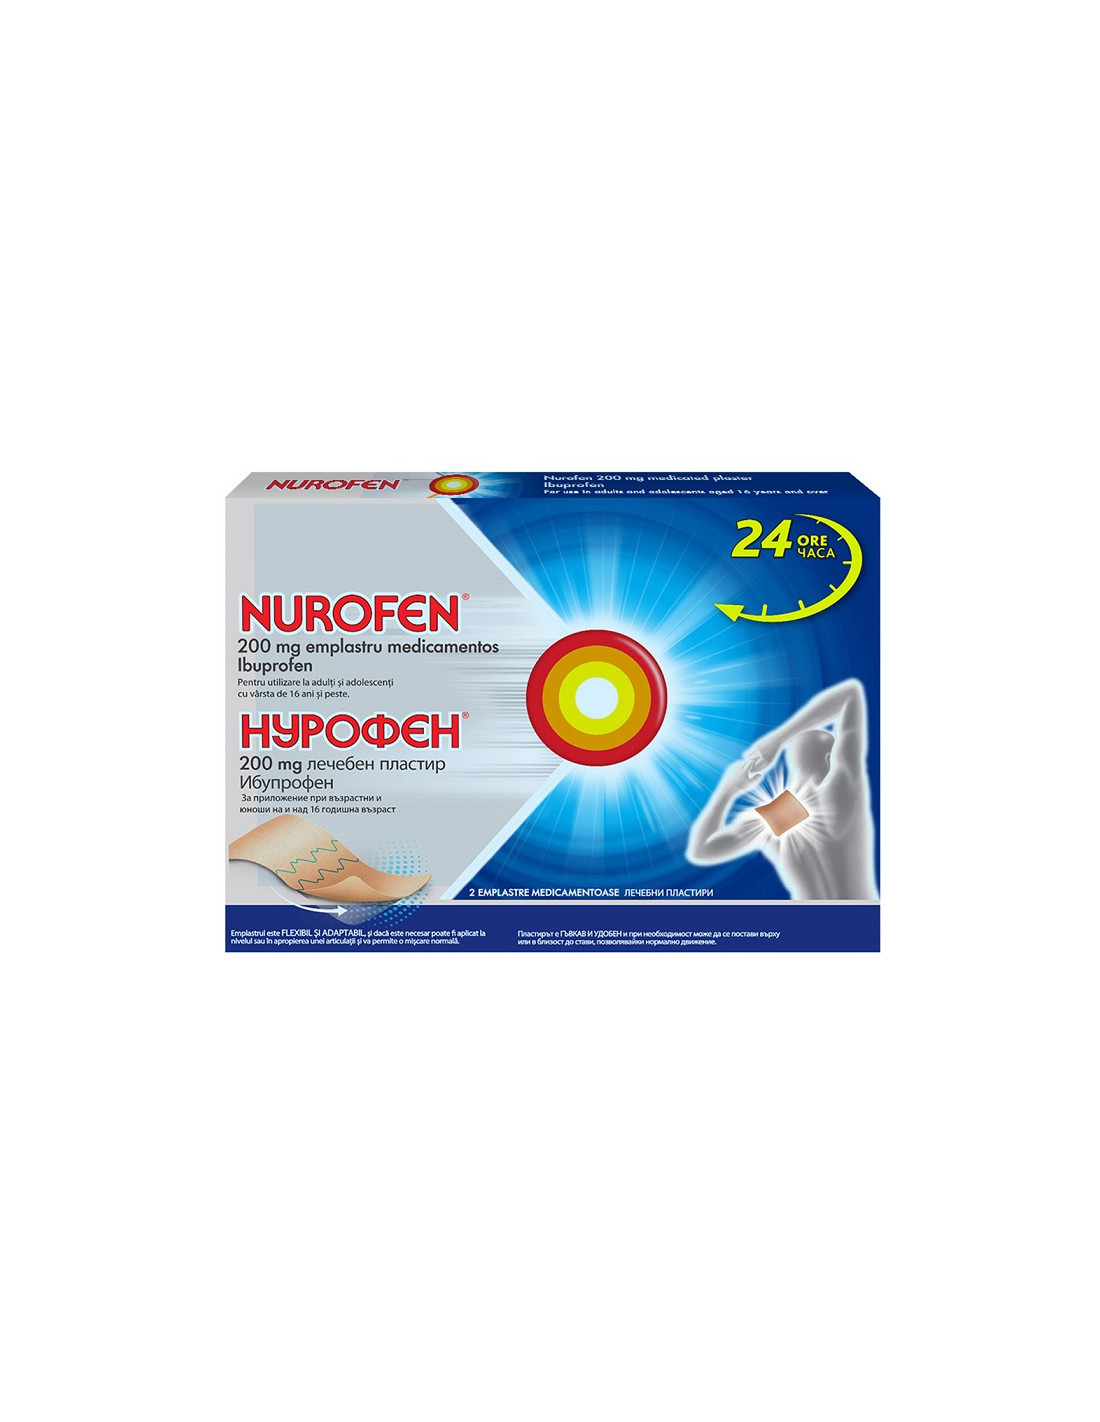 Nurofen Emplastru Medicamentos, 200 mg, 2 bucăți, Reckitt Benckiser